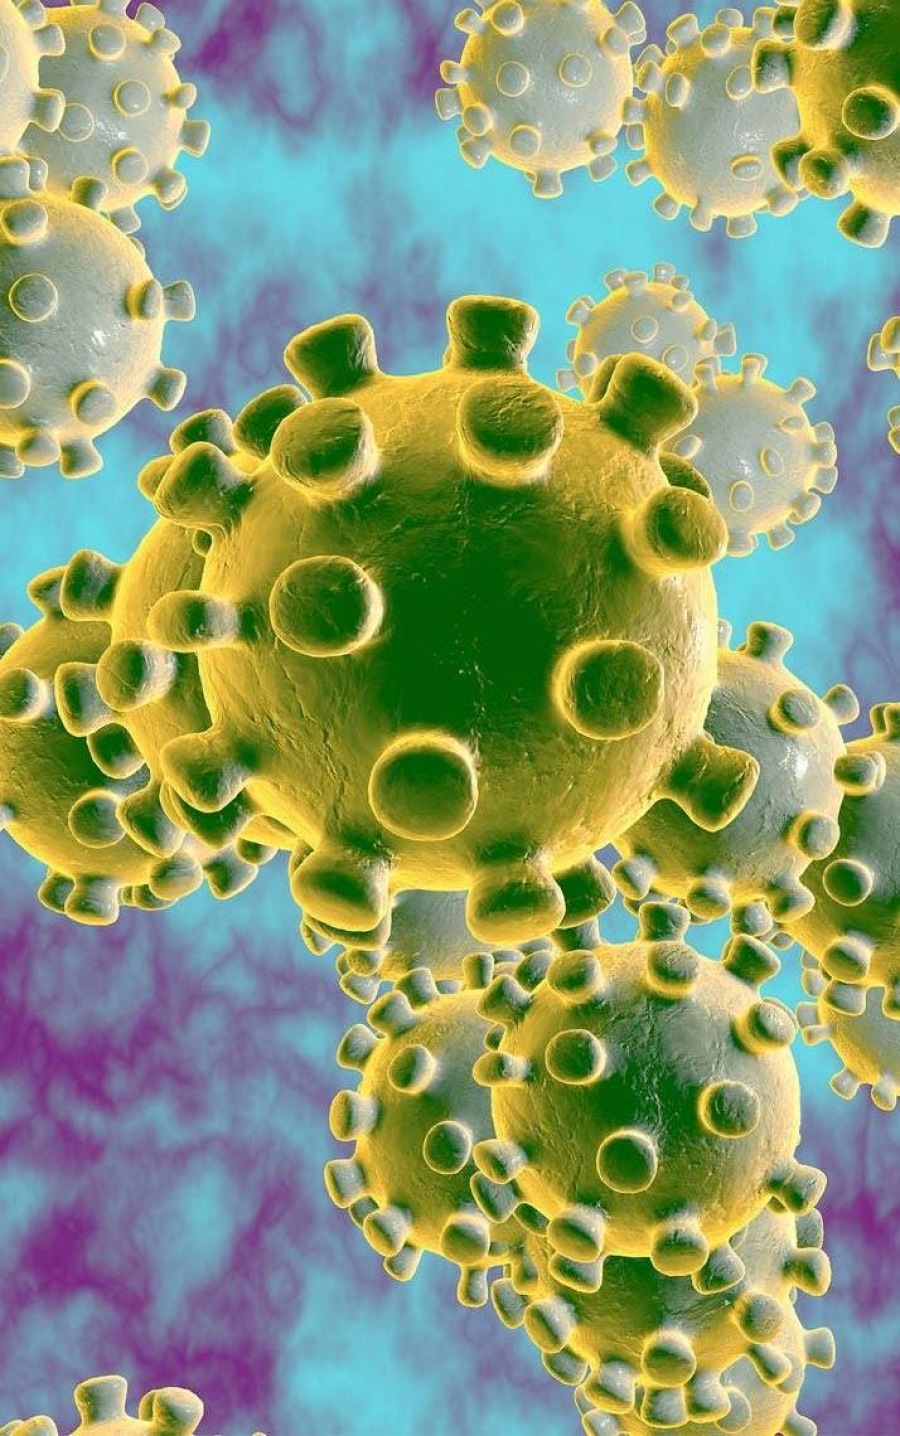 Voorzorgsmaatregelen voor het Coronavirus